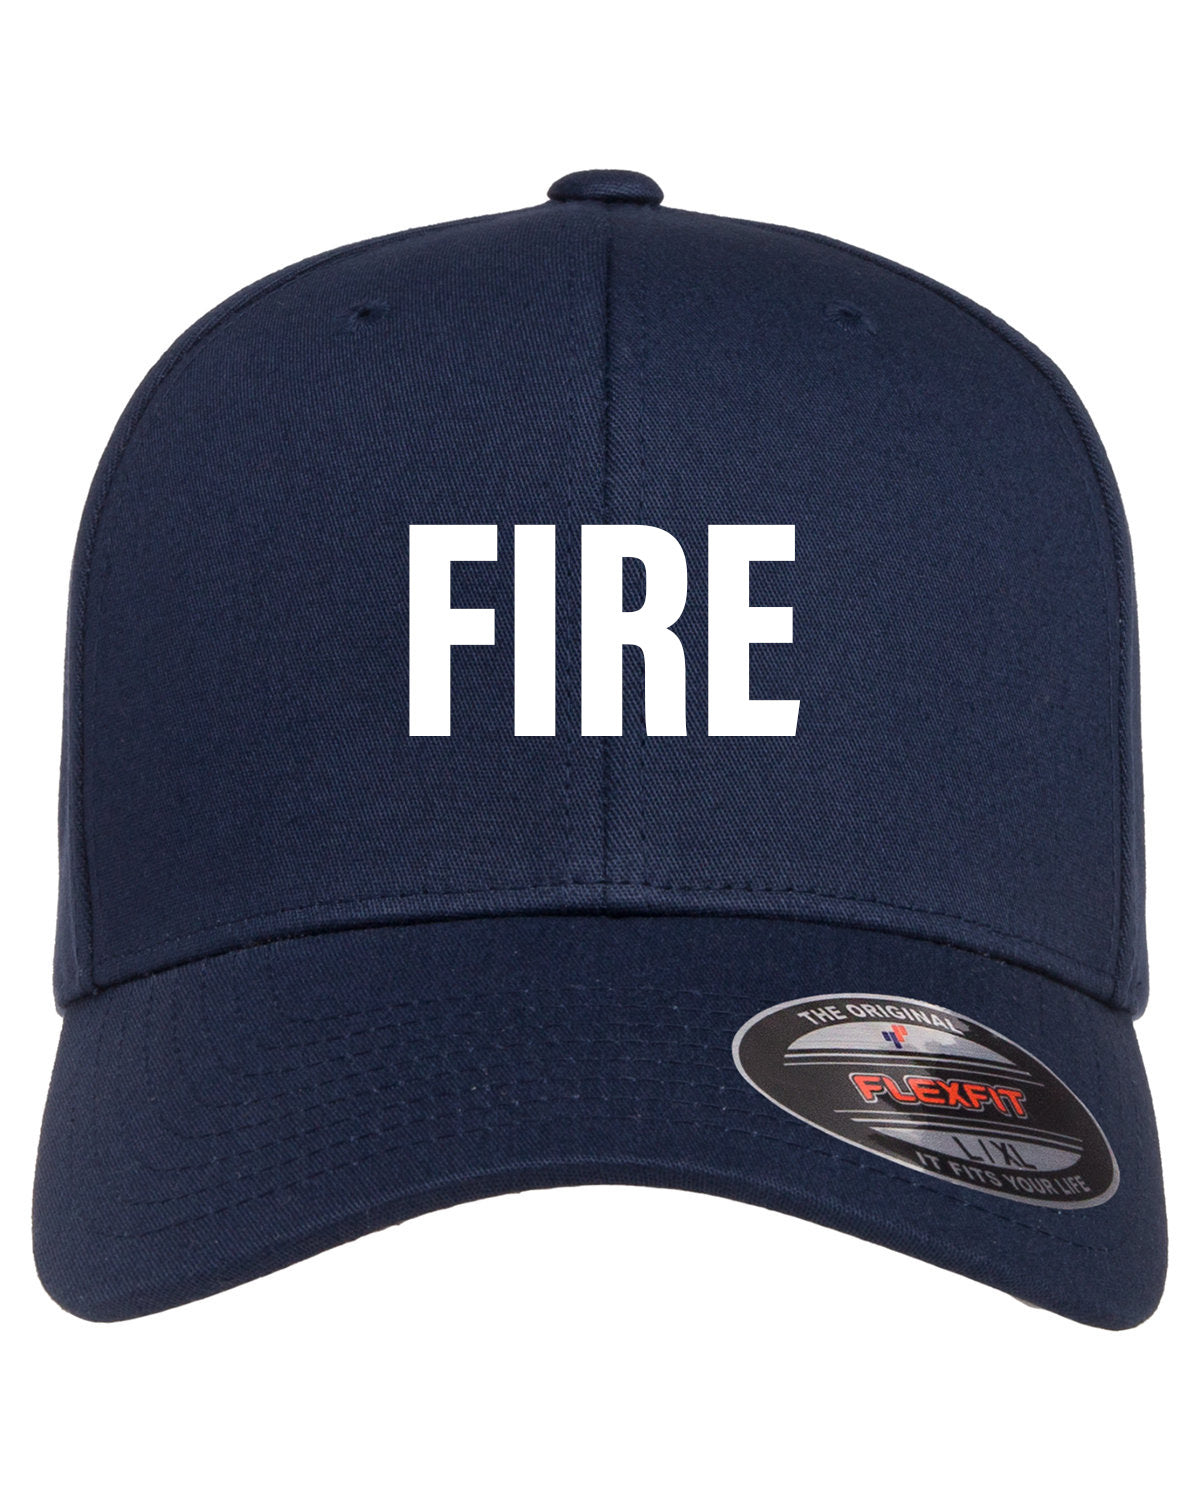 Fire - Ball Cap, Navy